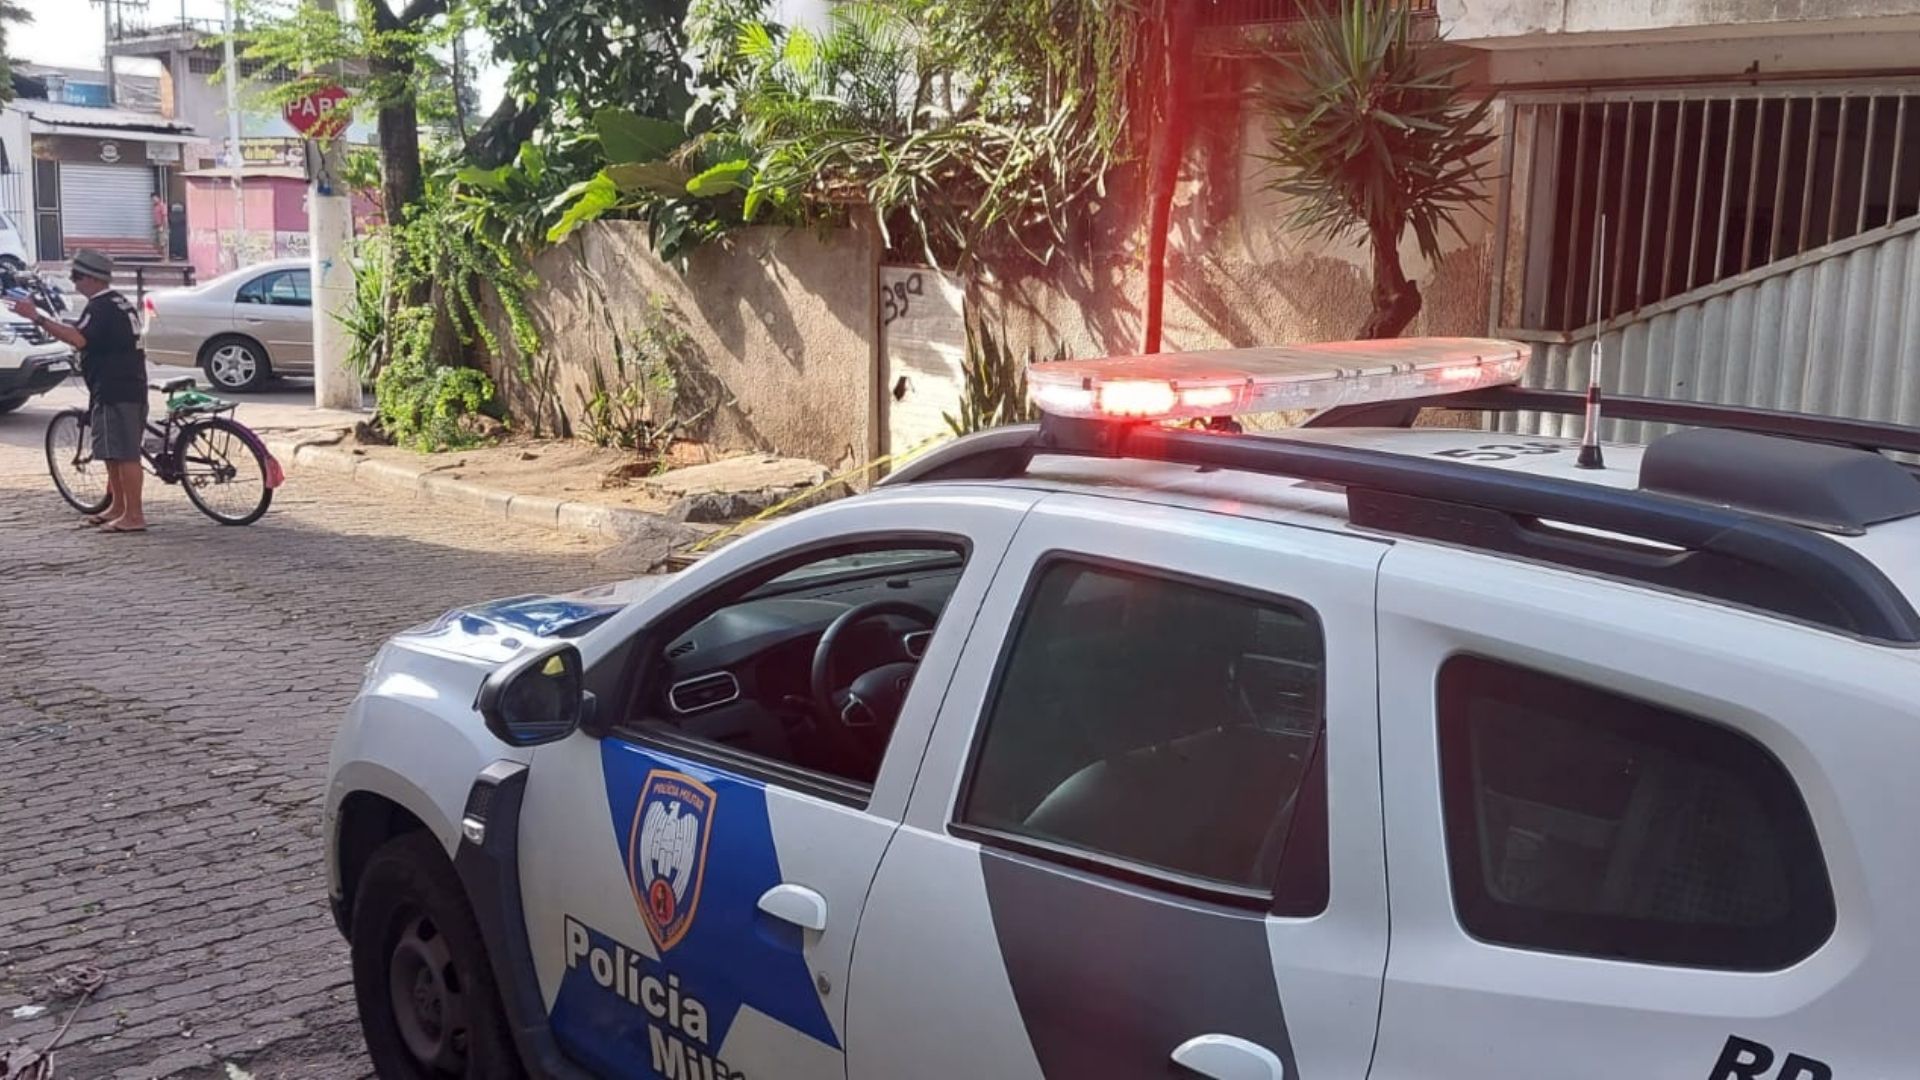 Moradora viu mulher morta caída na Rua Ernesto Nazaré e chamou a polícia, na manhã desta quinta-feira (25); há suspeita de que vítima tenha sofrido violência sexual